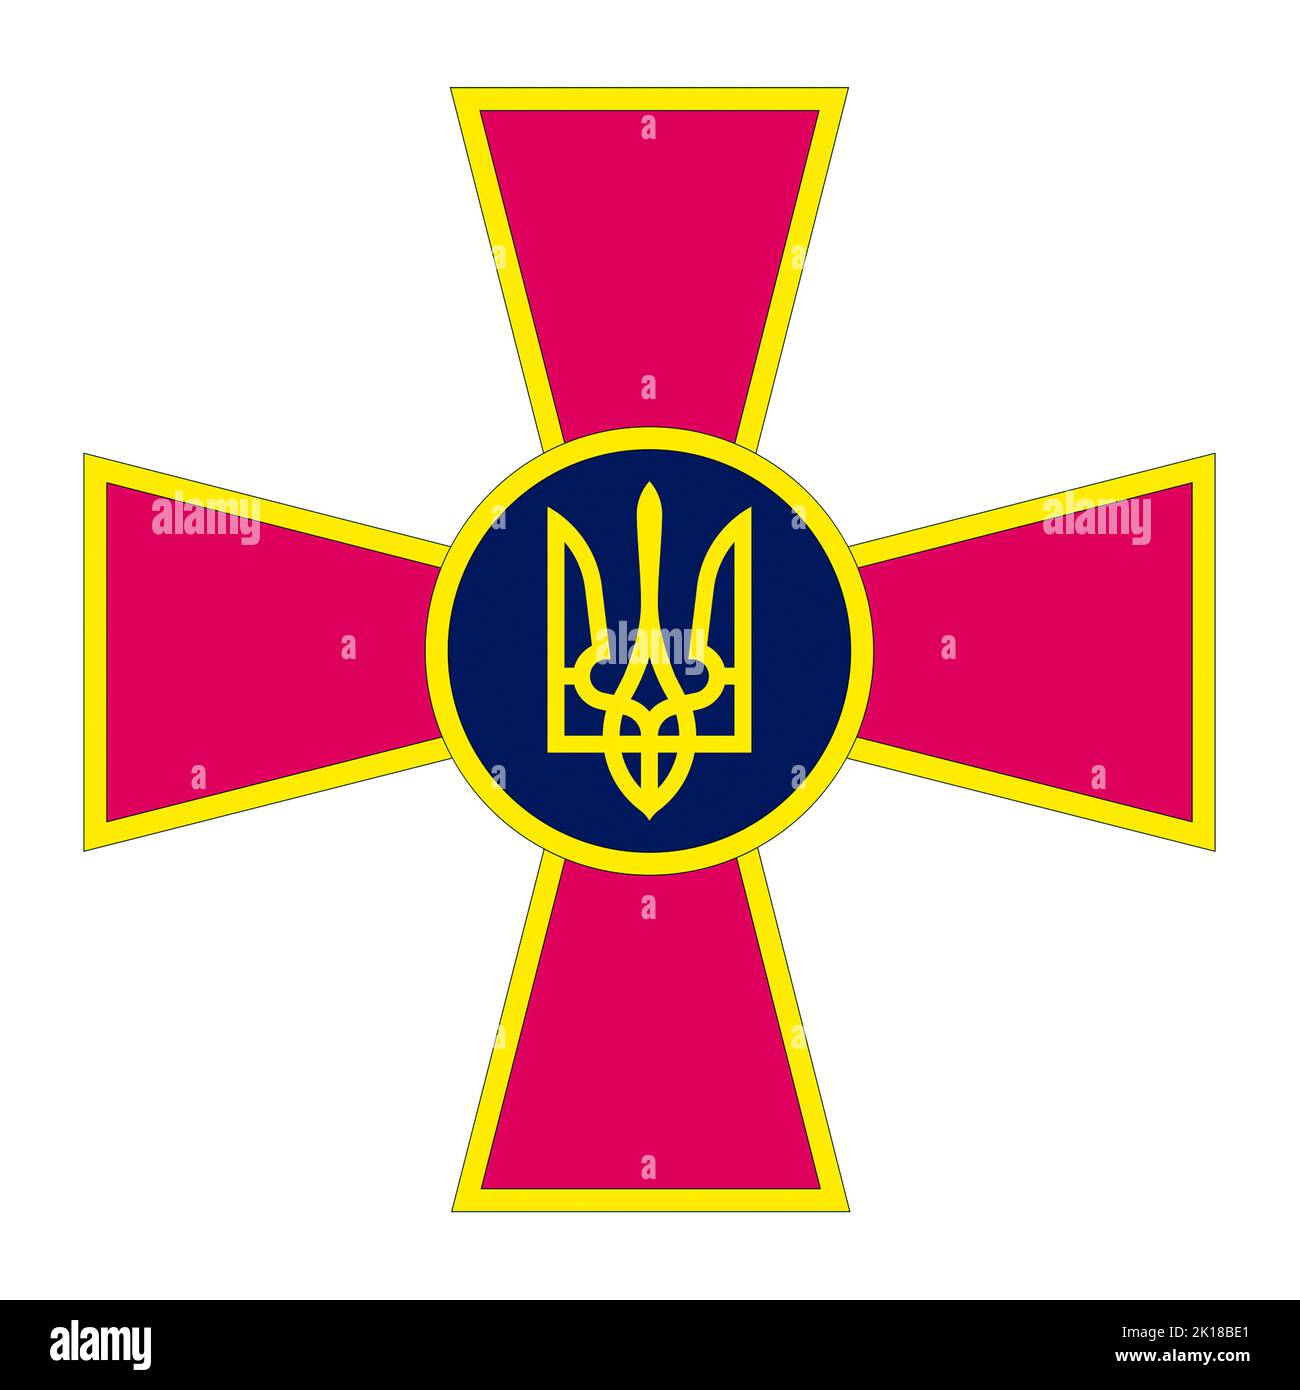 Emblema delle forze armate dell'Ucraina con lo stemma nazionale - Ucraina. Foto Stock